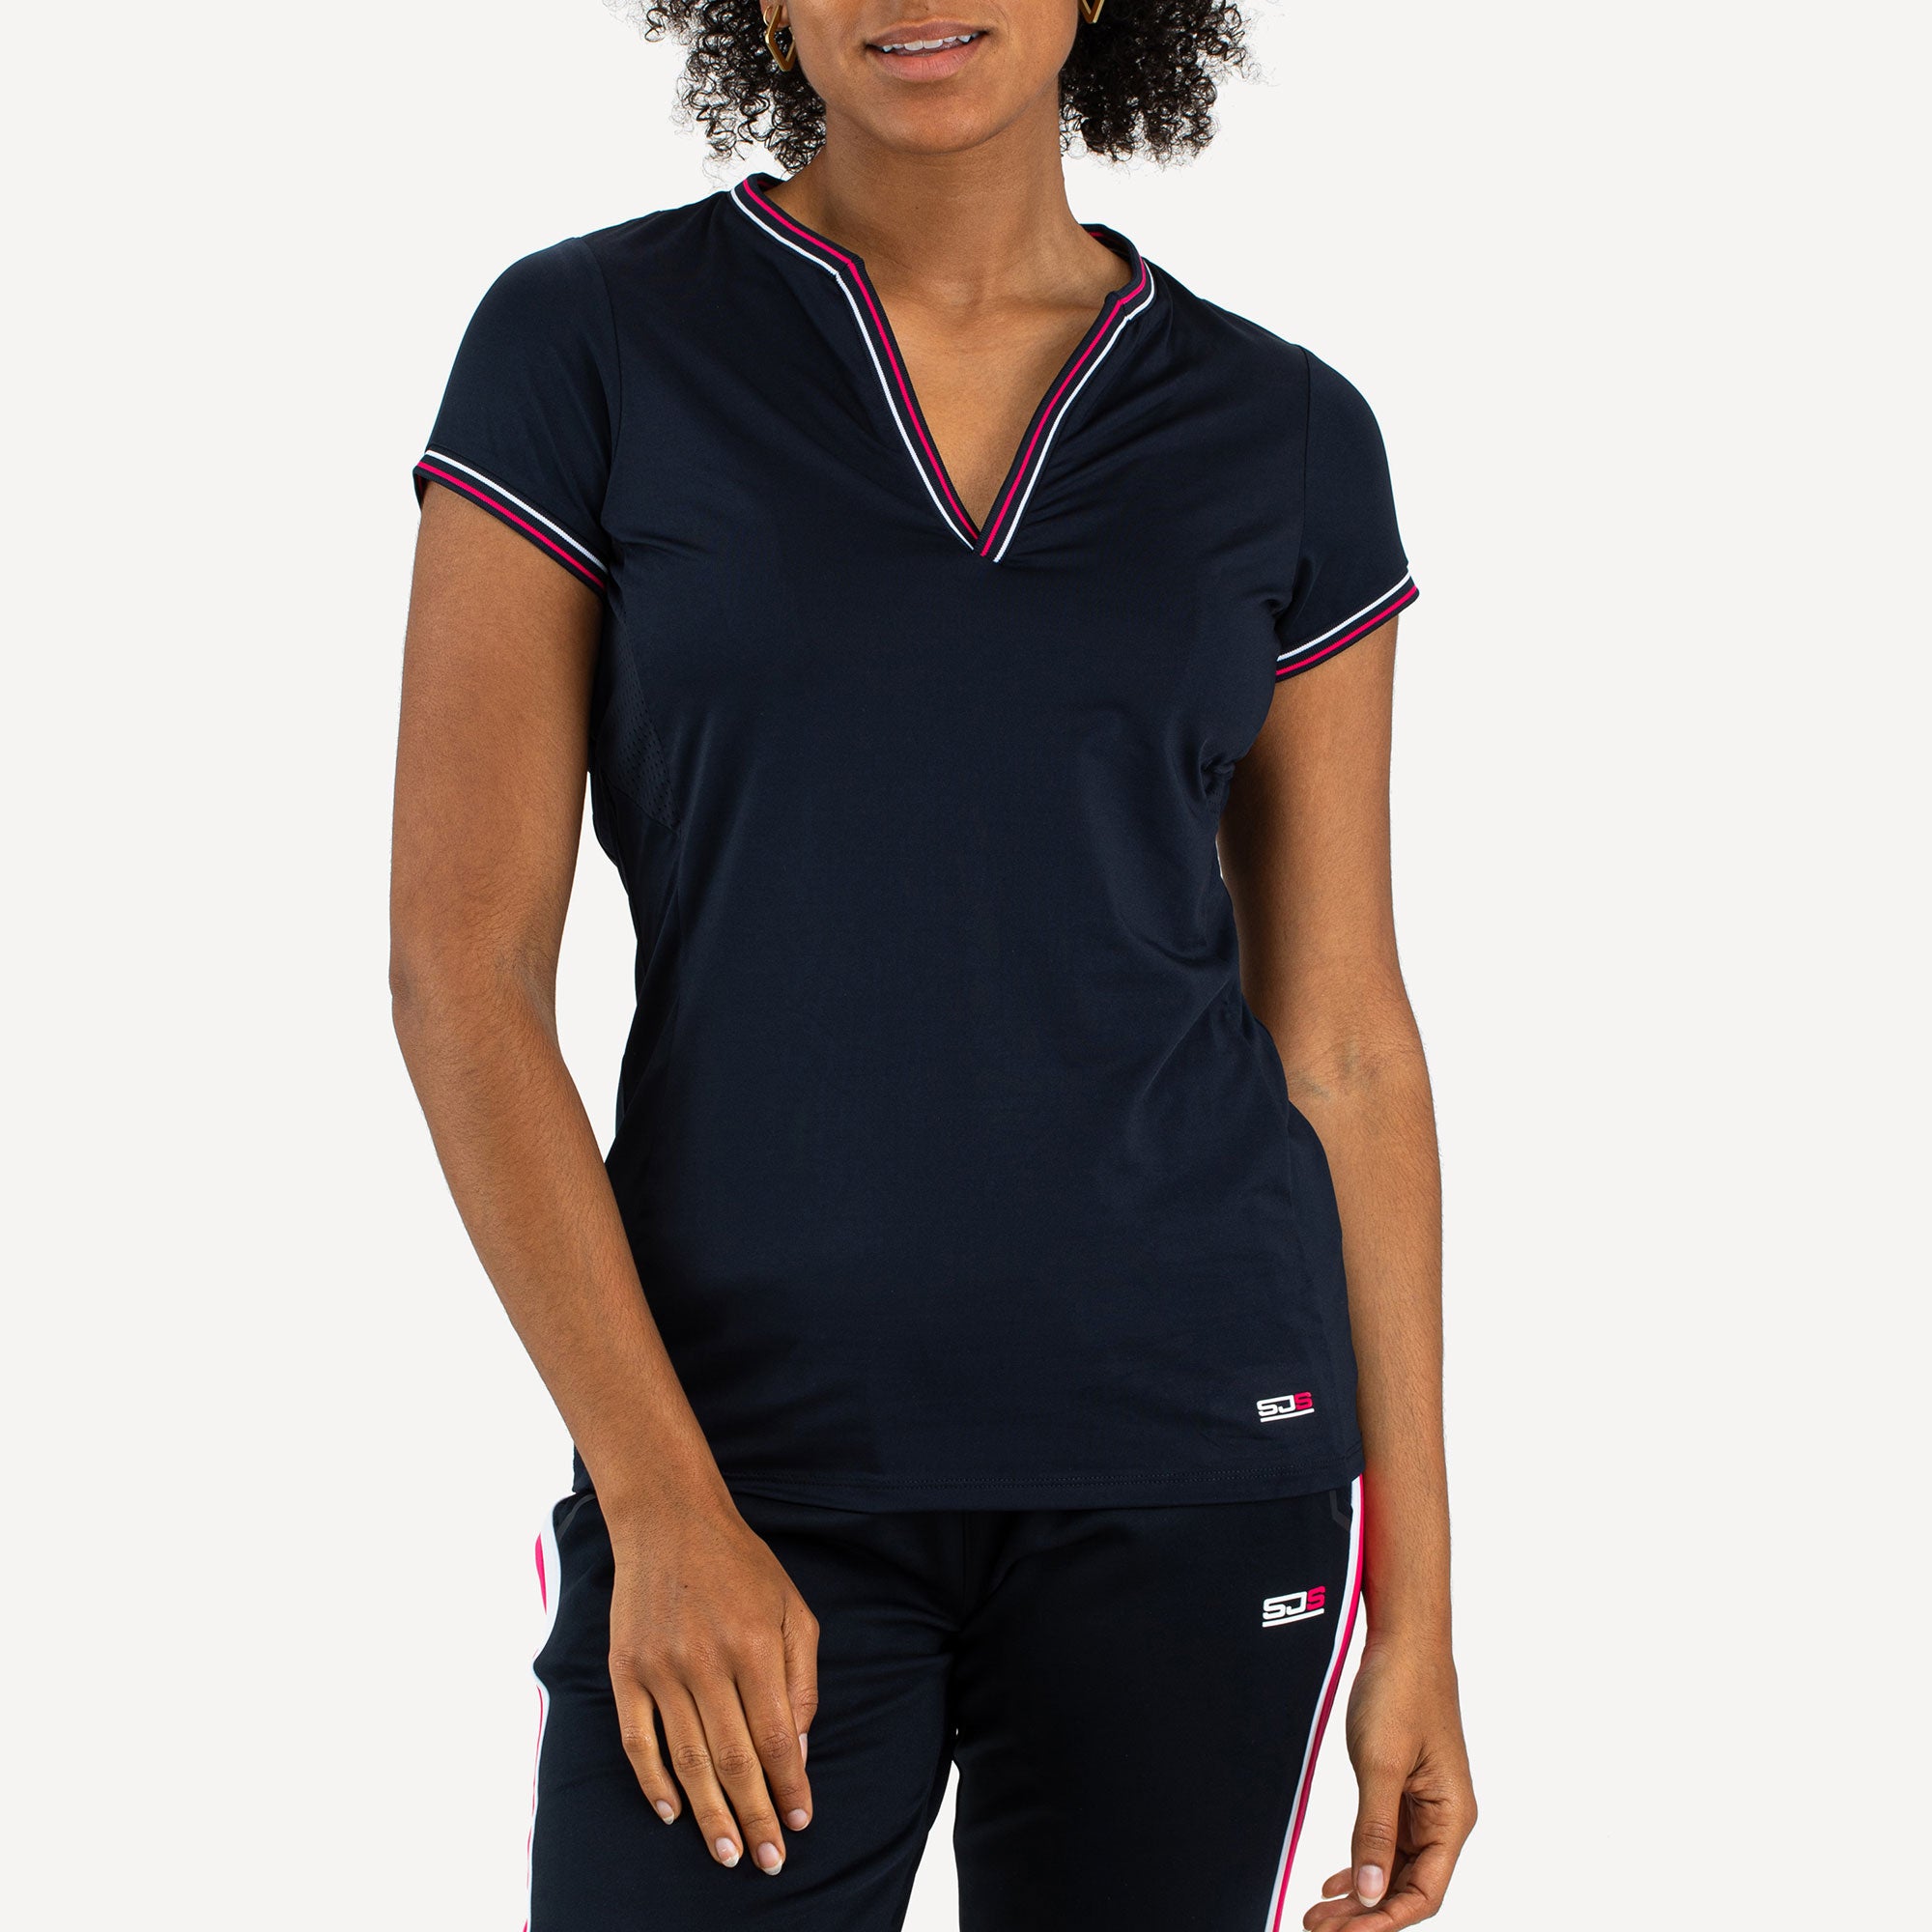 Sjeng Sports Diva Women's Tennis Shirt Blue (1)